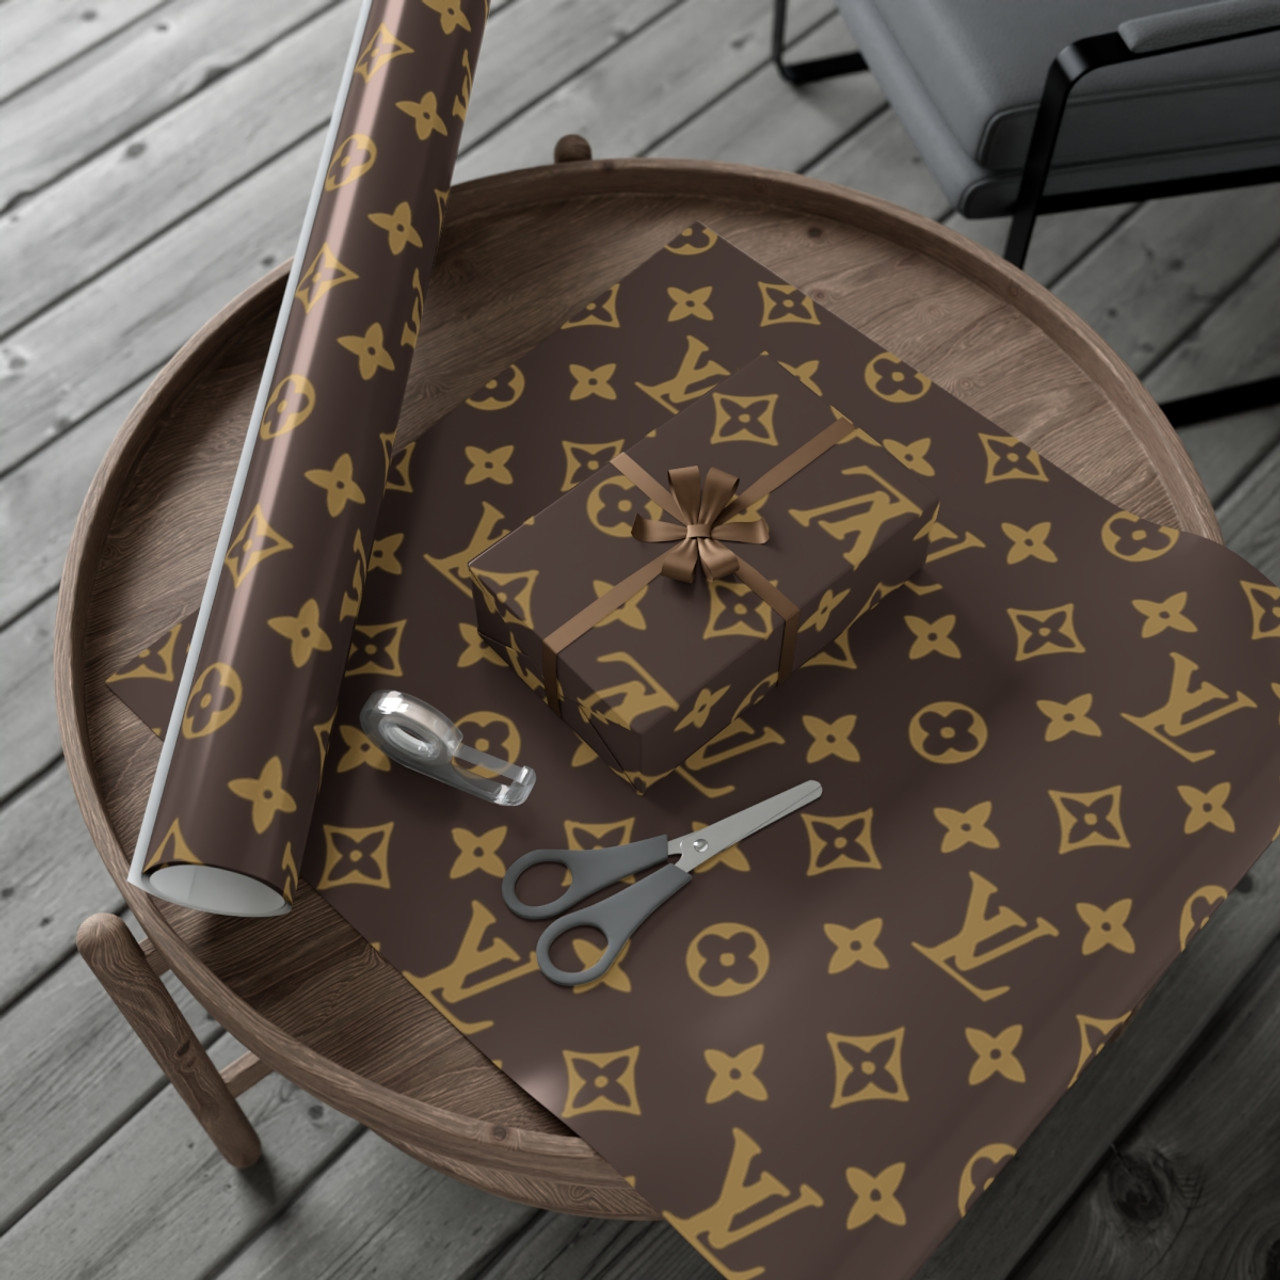 LV Louis Vuitton authentic gift bag